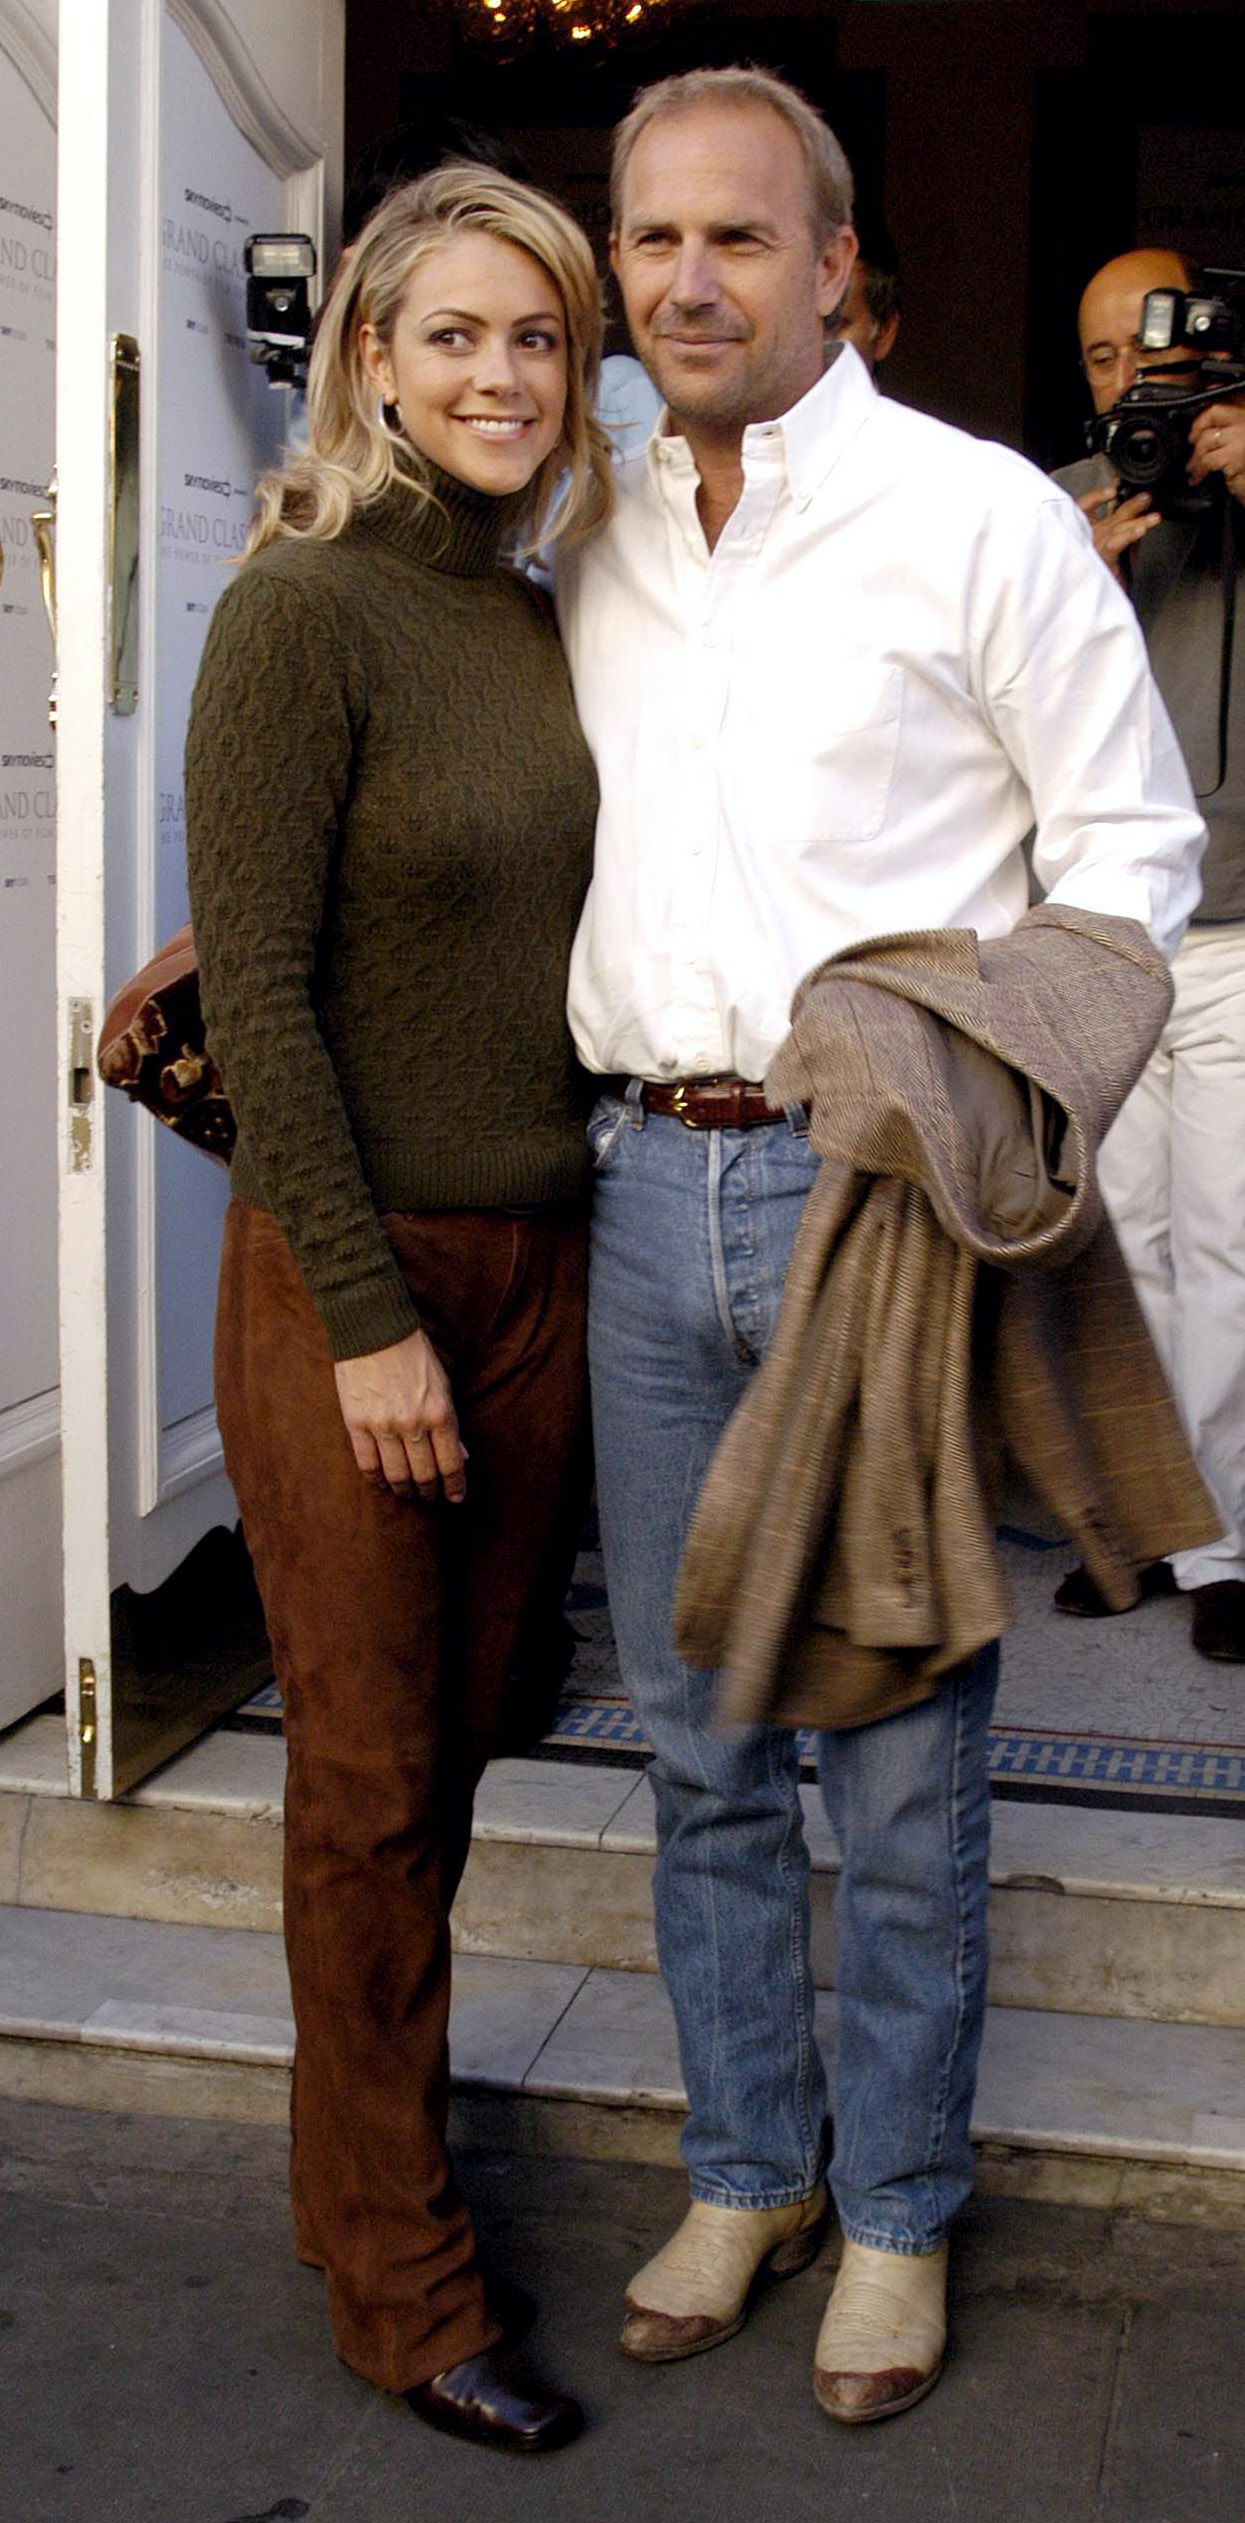 Christine Baumgartner y Kevin Costner en la proyección de "Cool Hand Luke" en el cine Notting Hill de Londres, el 14 de septiembre de 2003. | Foto: Getty Images